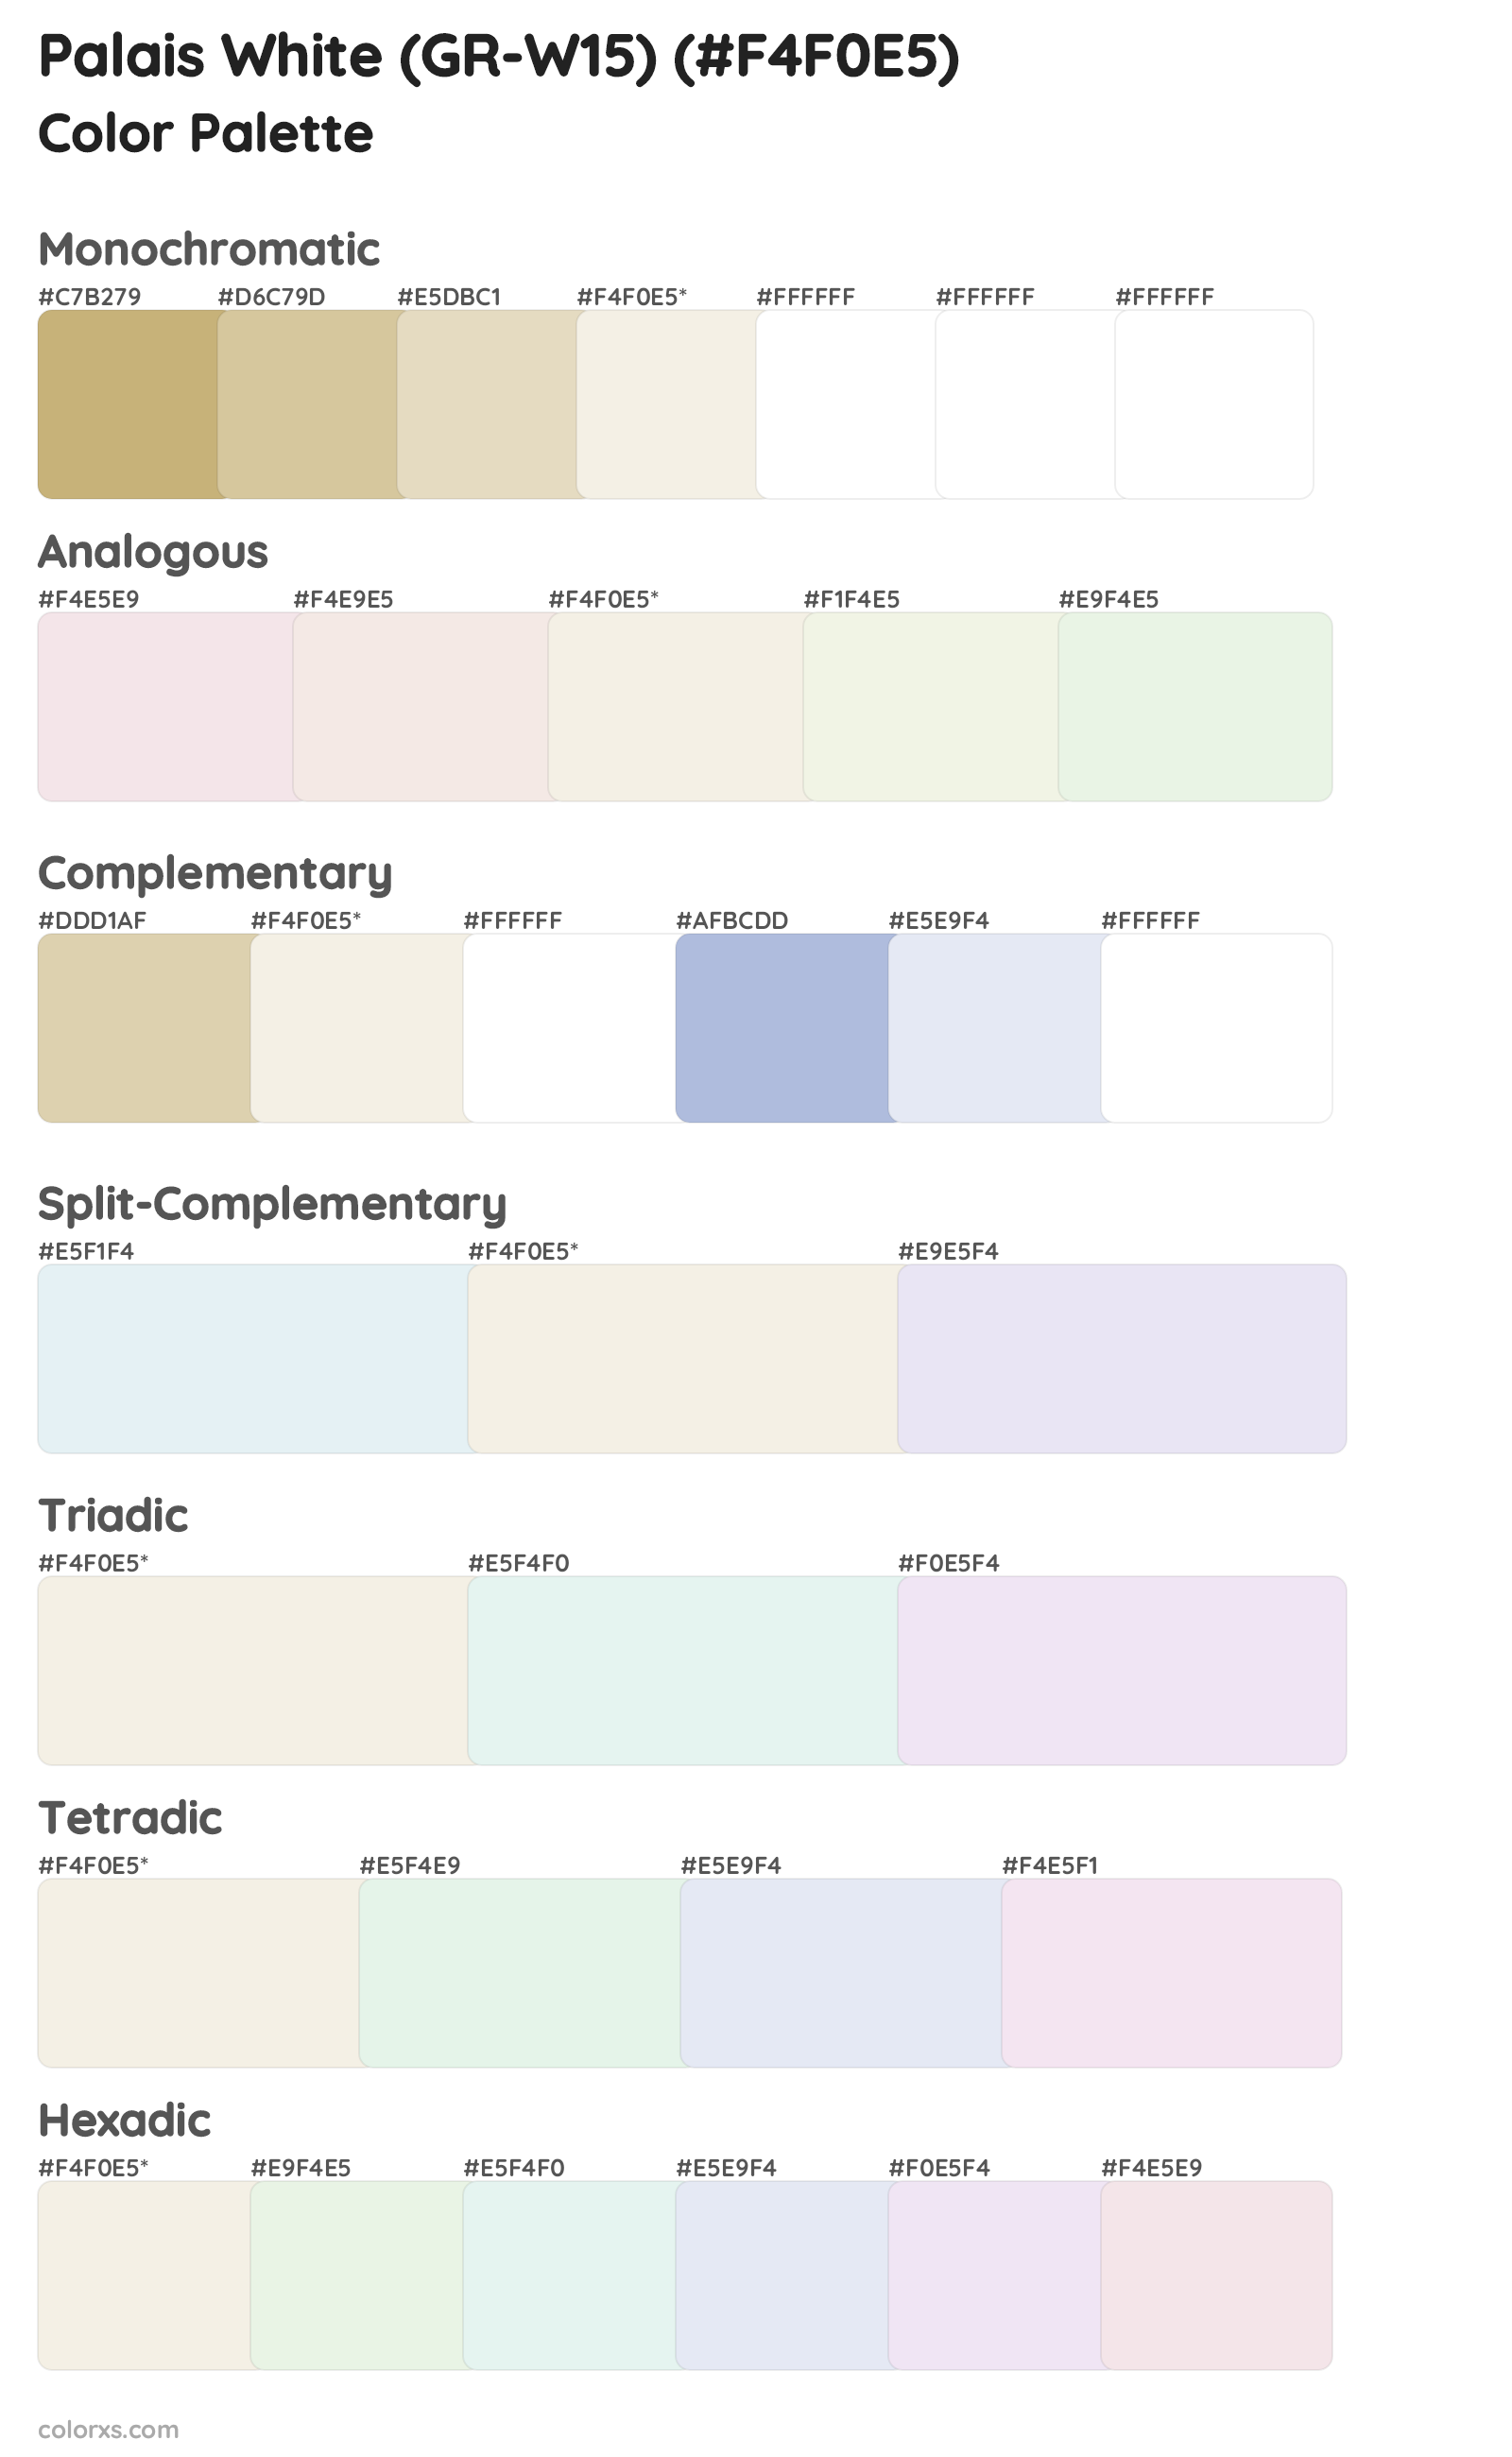 Palais White (GR-W15) Color Scheme Palettes